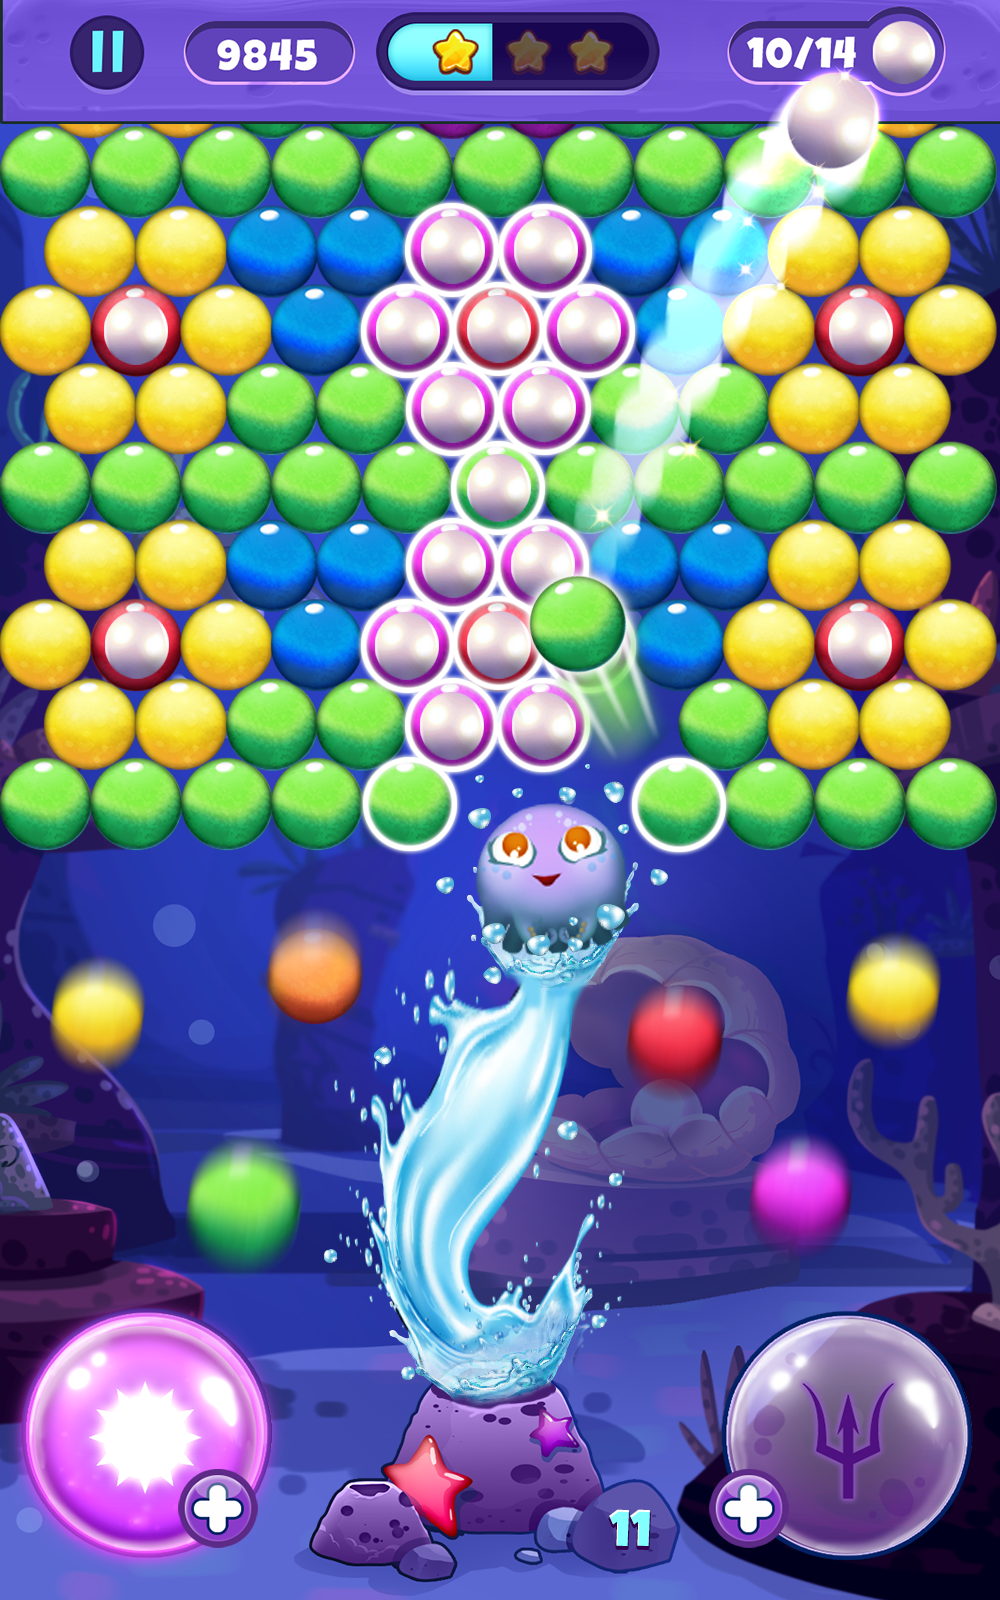 Pearl Pop screenshot game